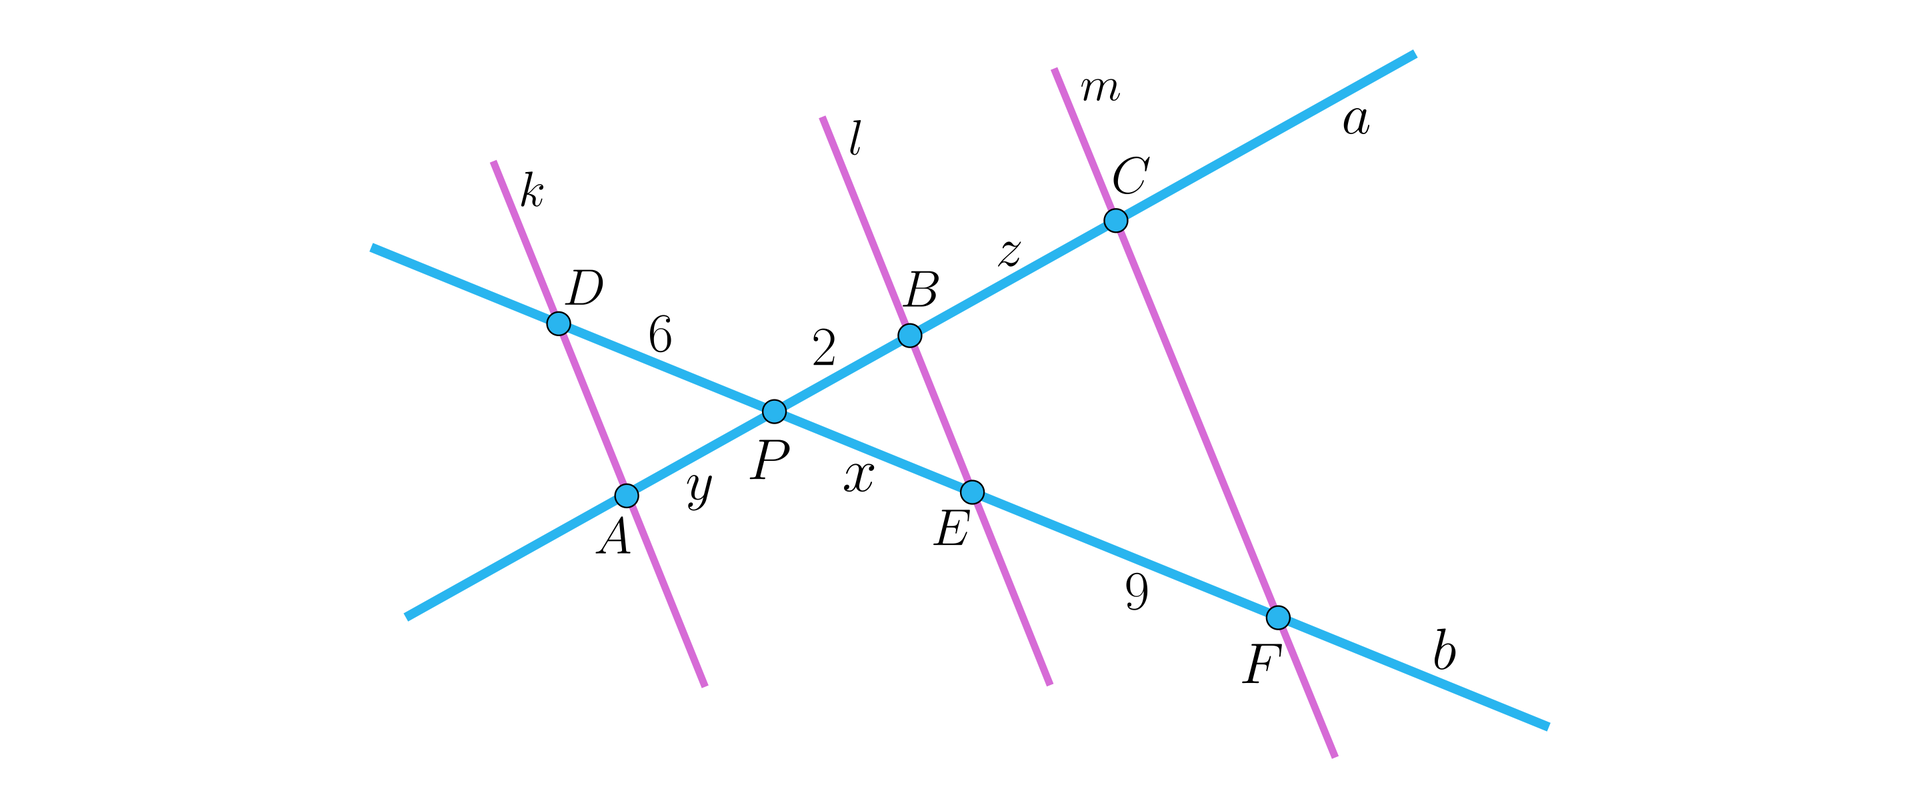 Ilustracja przedstawia dwie proste a i b przecinające się w punkcie P tworzące w ten sposób kąty wierzchołkowe. Kąty te przecięte są trzema równoległymi, ukośnymi prostymi: k, l i m. Pierwsza prosta przecina kąt wierzchołkowy na lewo od punktu P. Miejsce przecięcia prostej k i b oznaczono punktem D, a miejsce przecięcia prostych k i a punktem A. Dwie pozostałe proste przecinają kąt wierzchołkowy na prawo od punktu P. Prosta l i a przecina się w punkcie B, a prosta l i b w punkcie E. Prosta m i a przecina się w punkcie C, a prosta m i b w punkcie F. Odcinek DP ma długość sześć, odcinek AP ma długość y, odcinek PB ma długość dwa, odcinek BC długość z, odcinek PE ma długość x, a odcinek EF długość dziewięć.